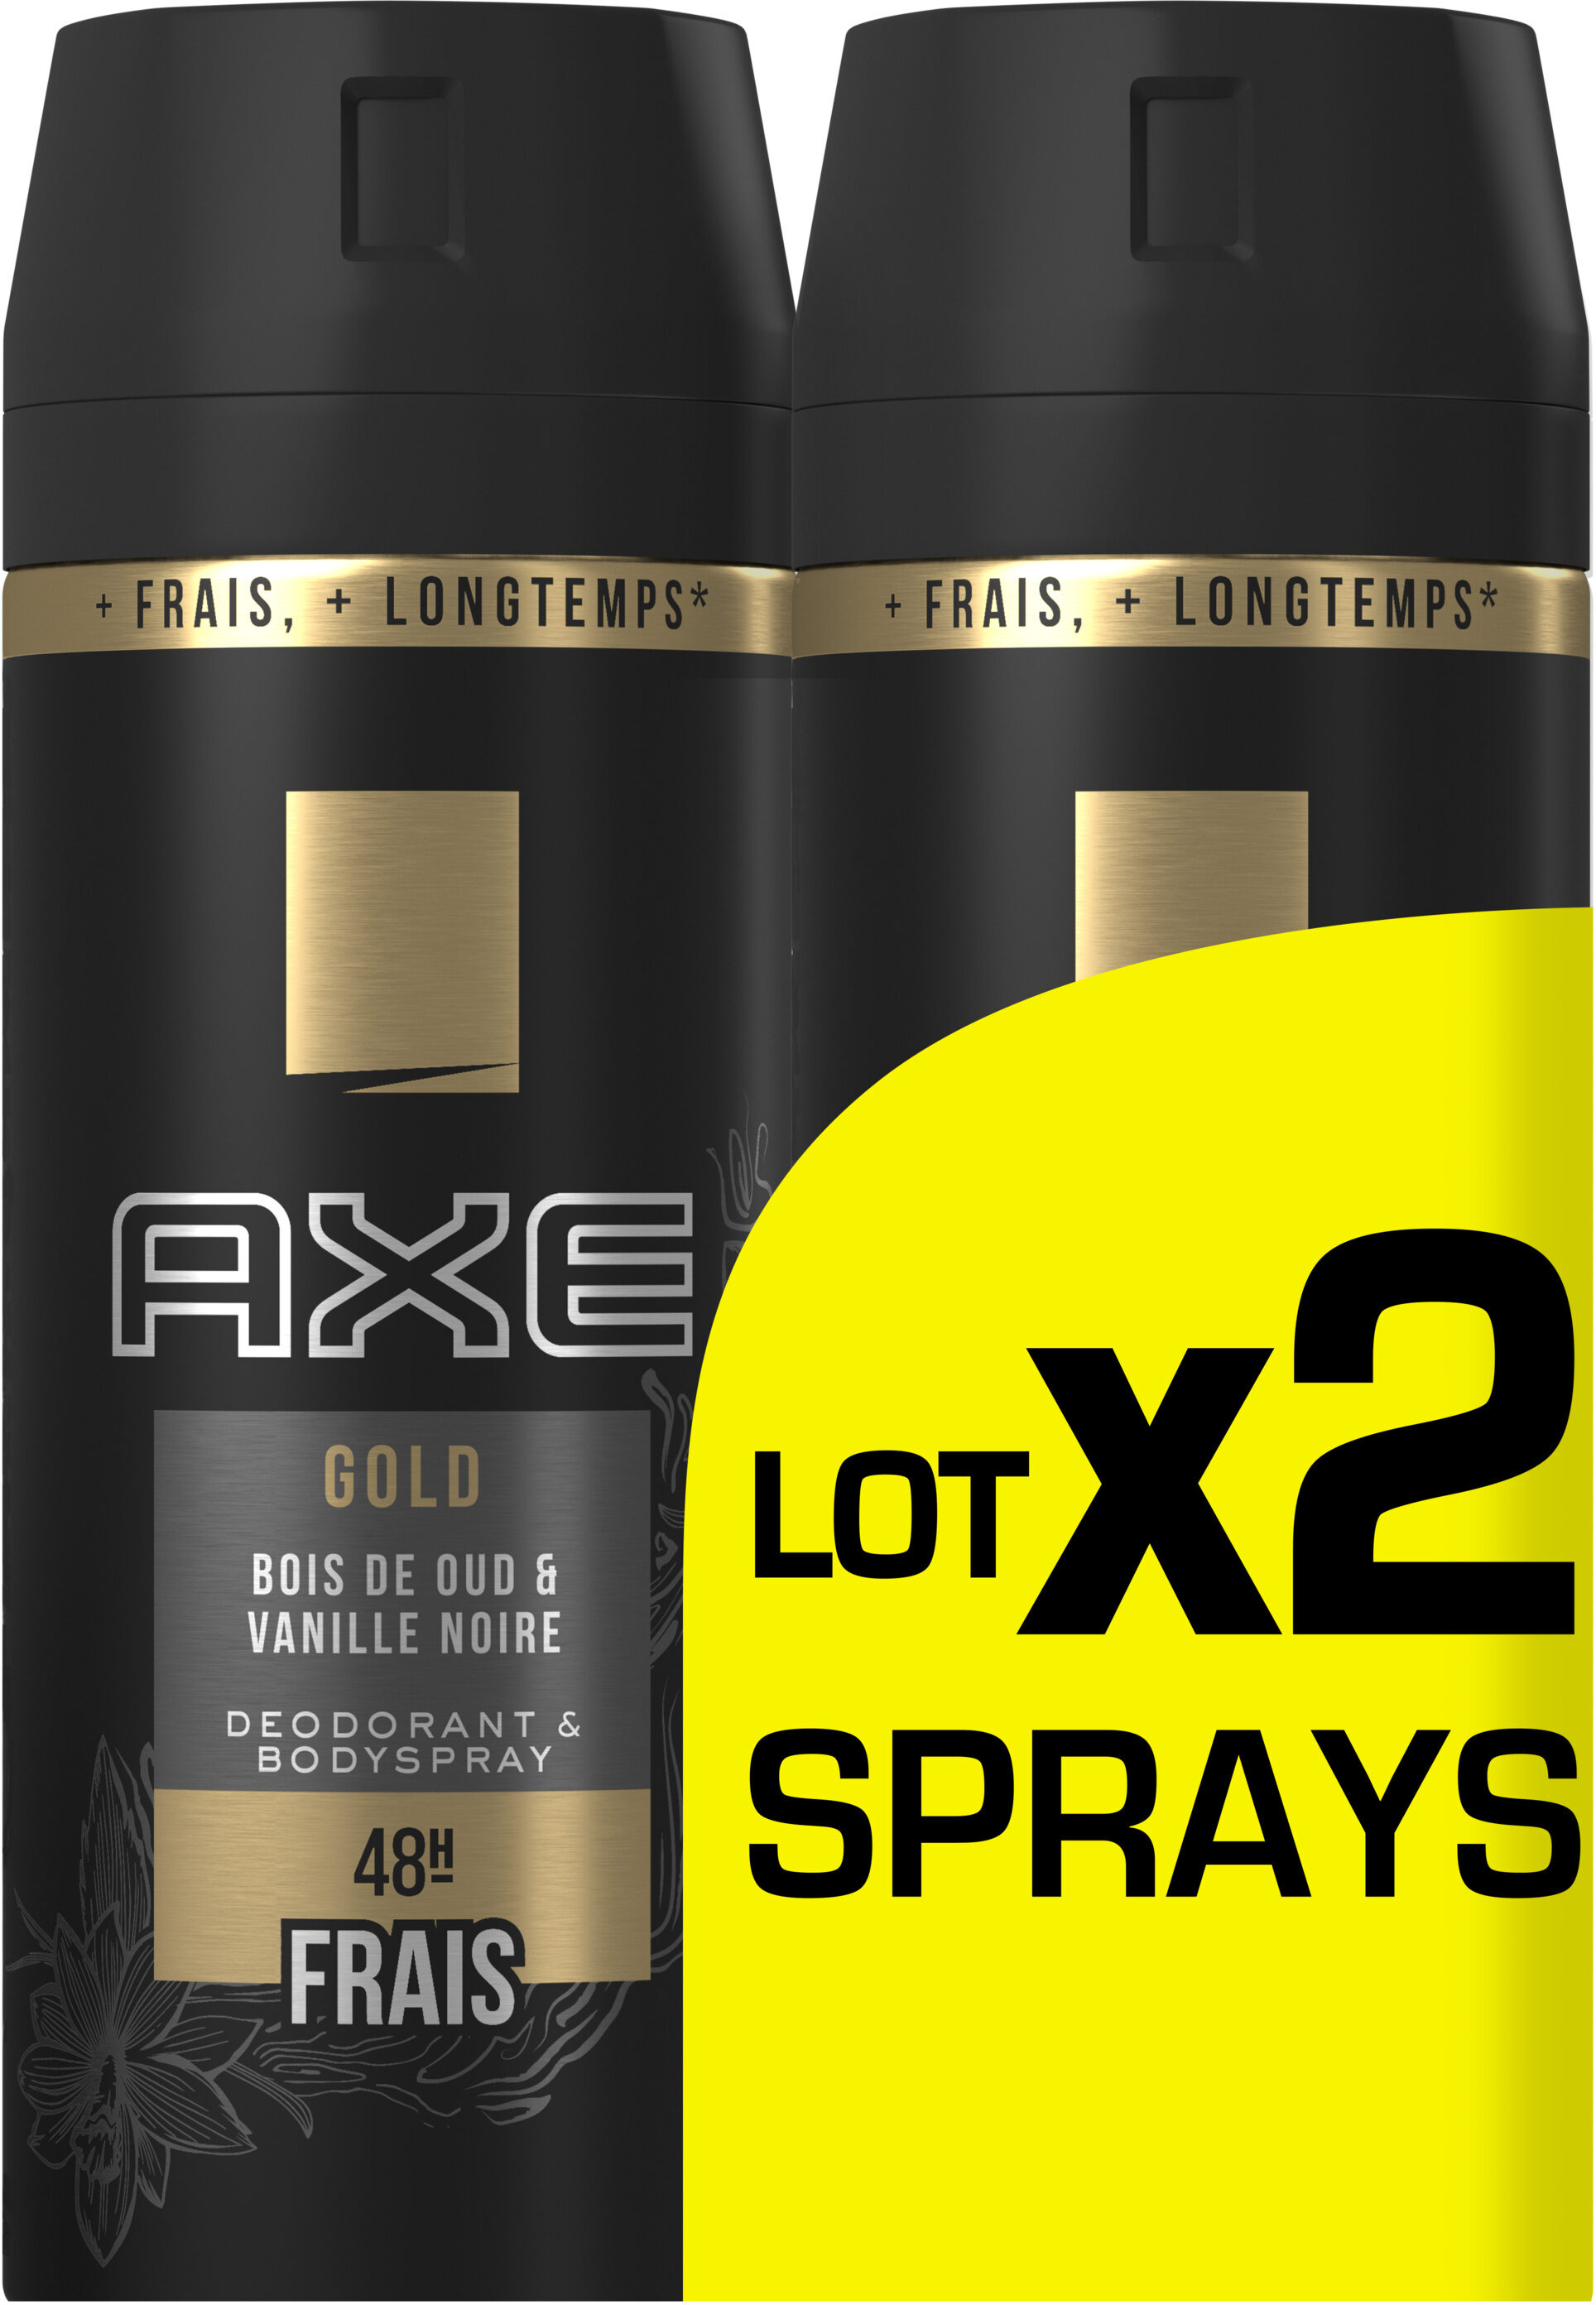 AXE Gold Déodorant Homme Bois de Oud et Vanille Noir 48H Spray Lot 2x150ml - Product - fr